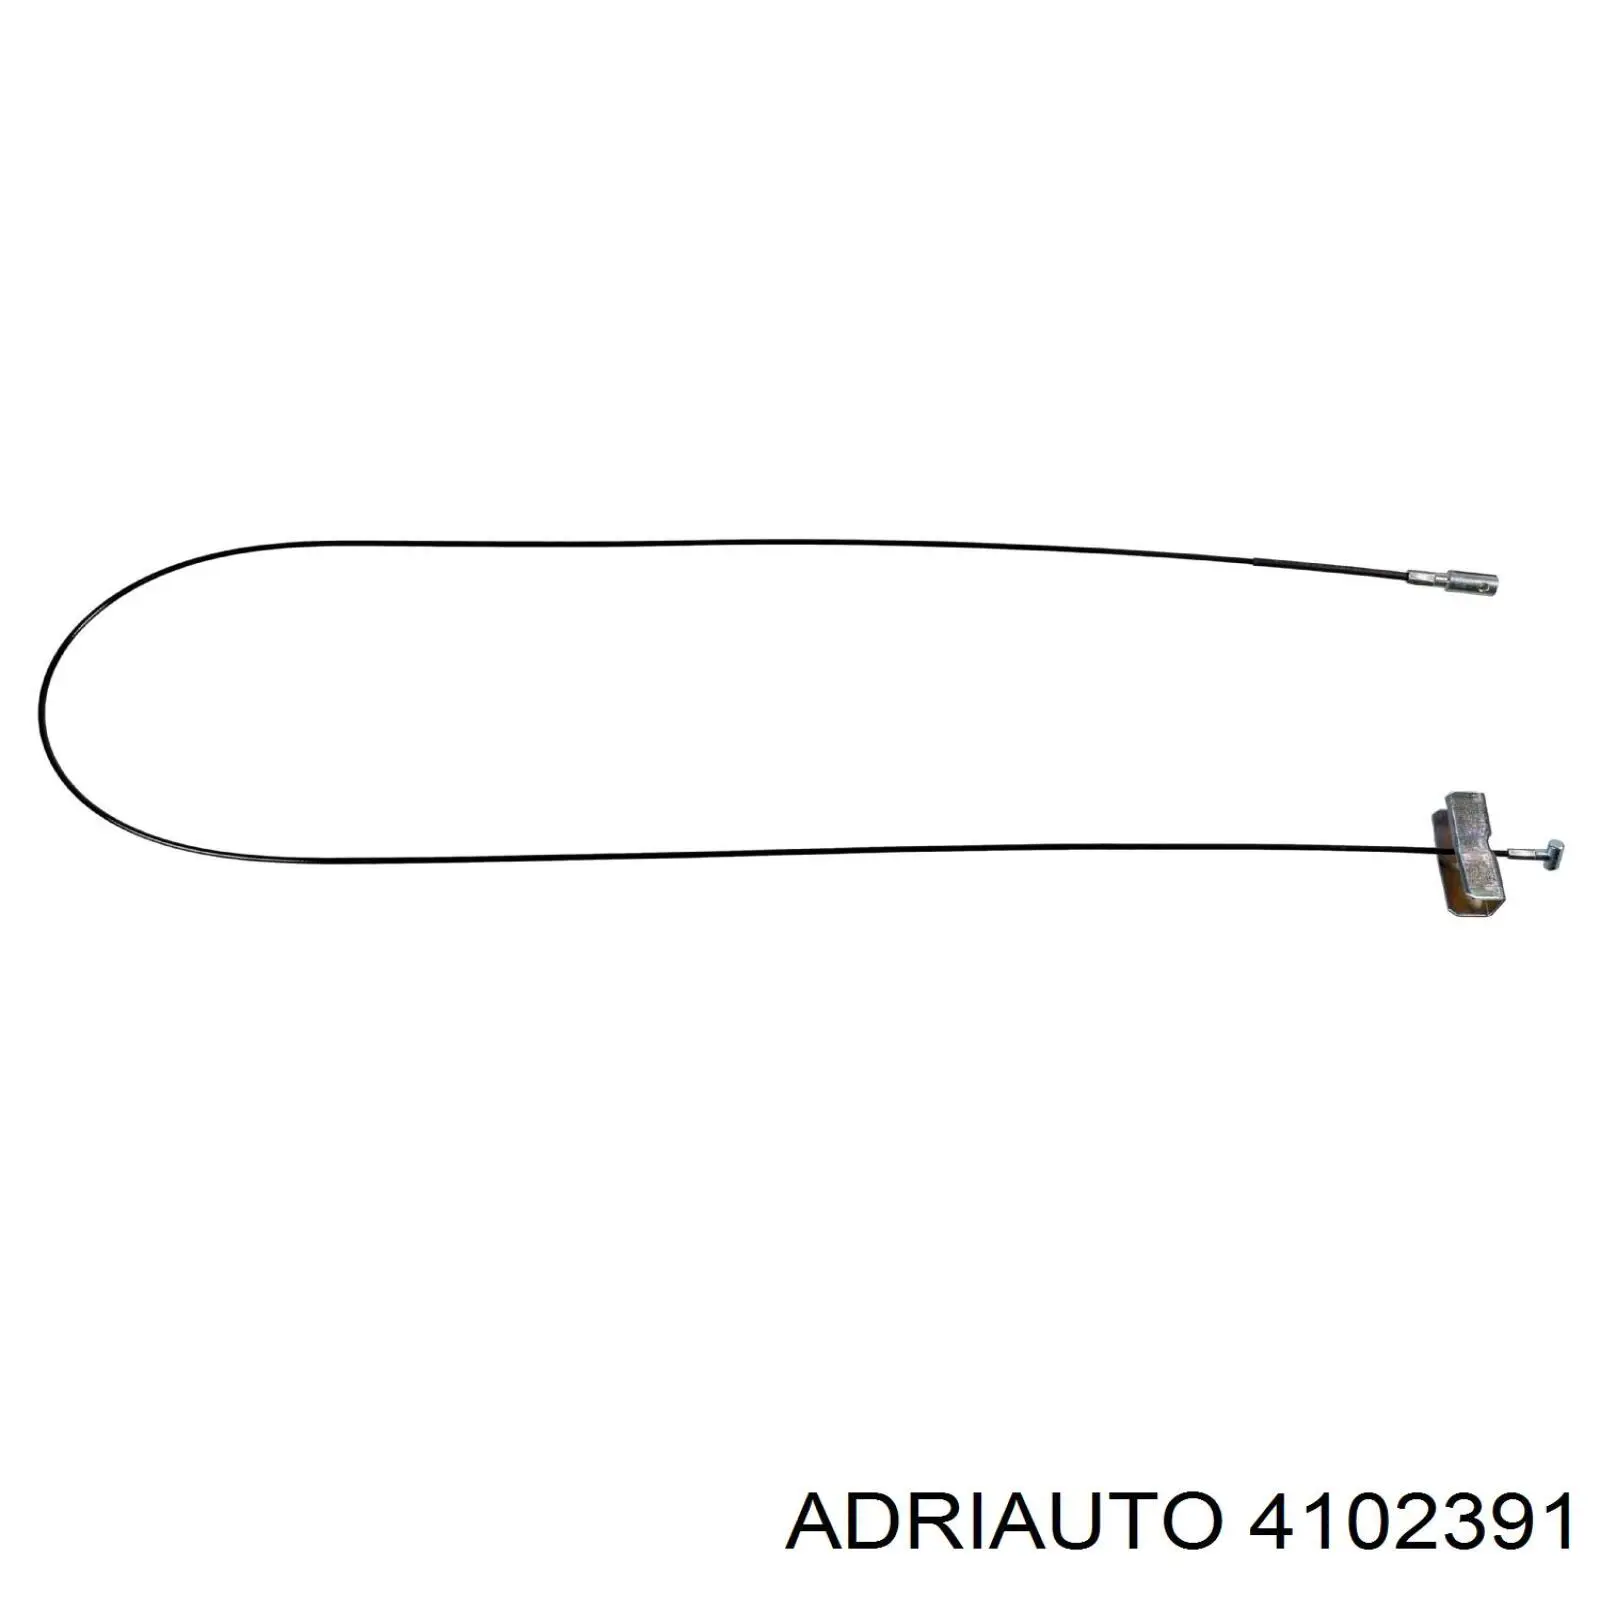 4102391 Adriauto cable de freno de mano intermedio